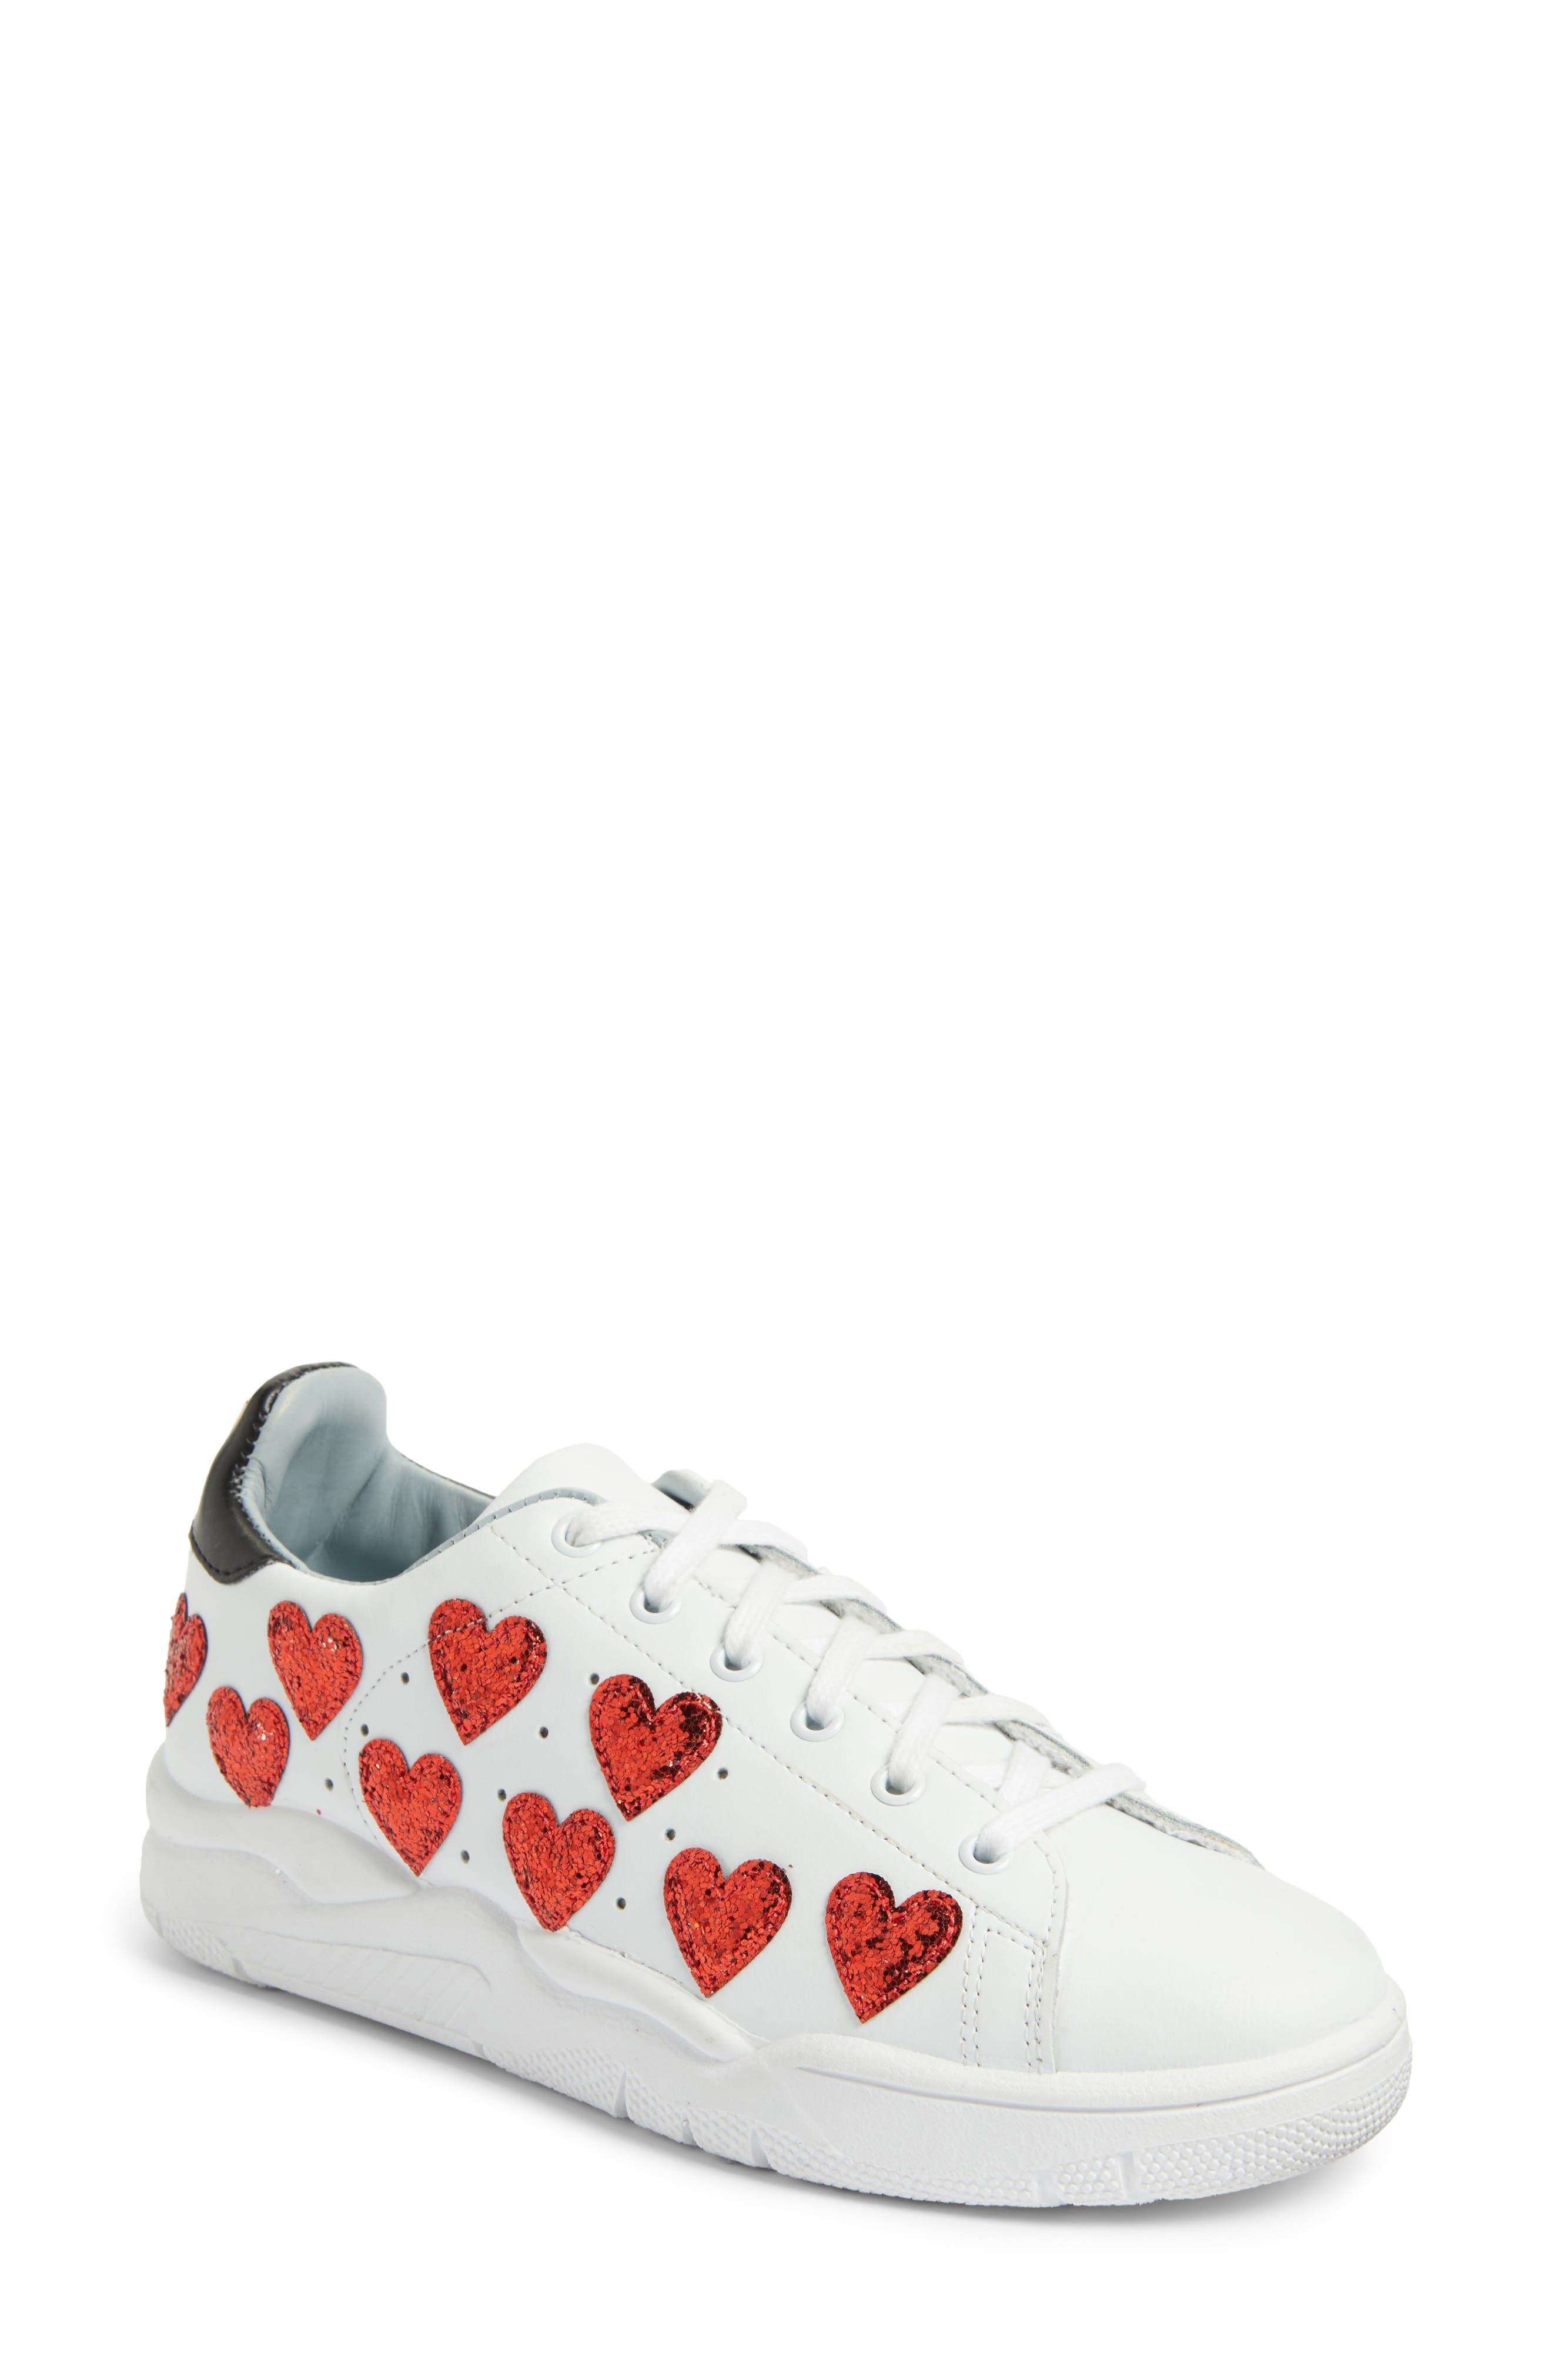 heart sneakers chiara ferragni